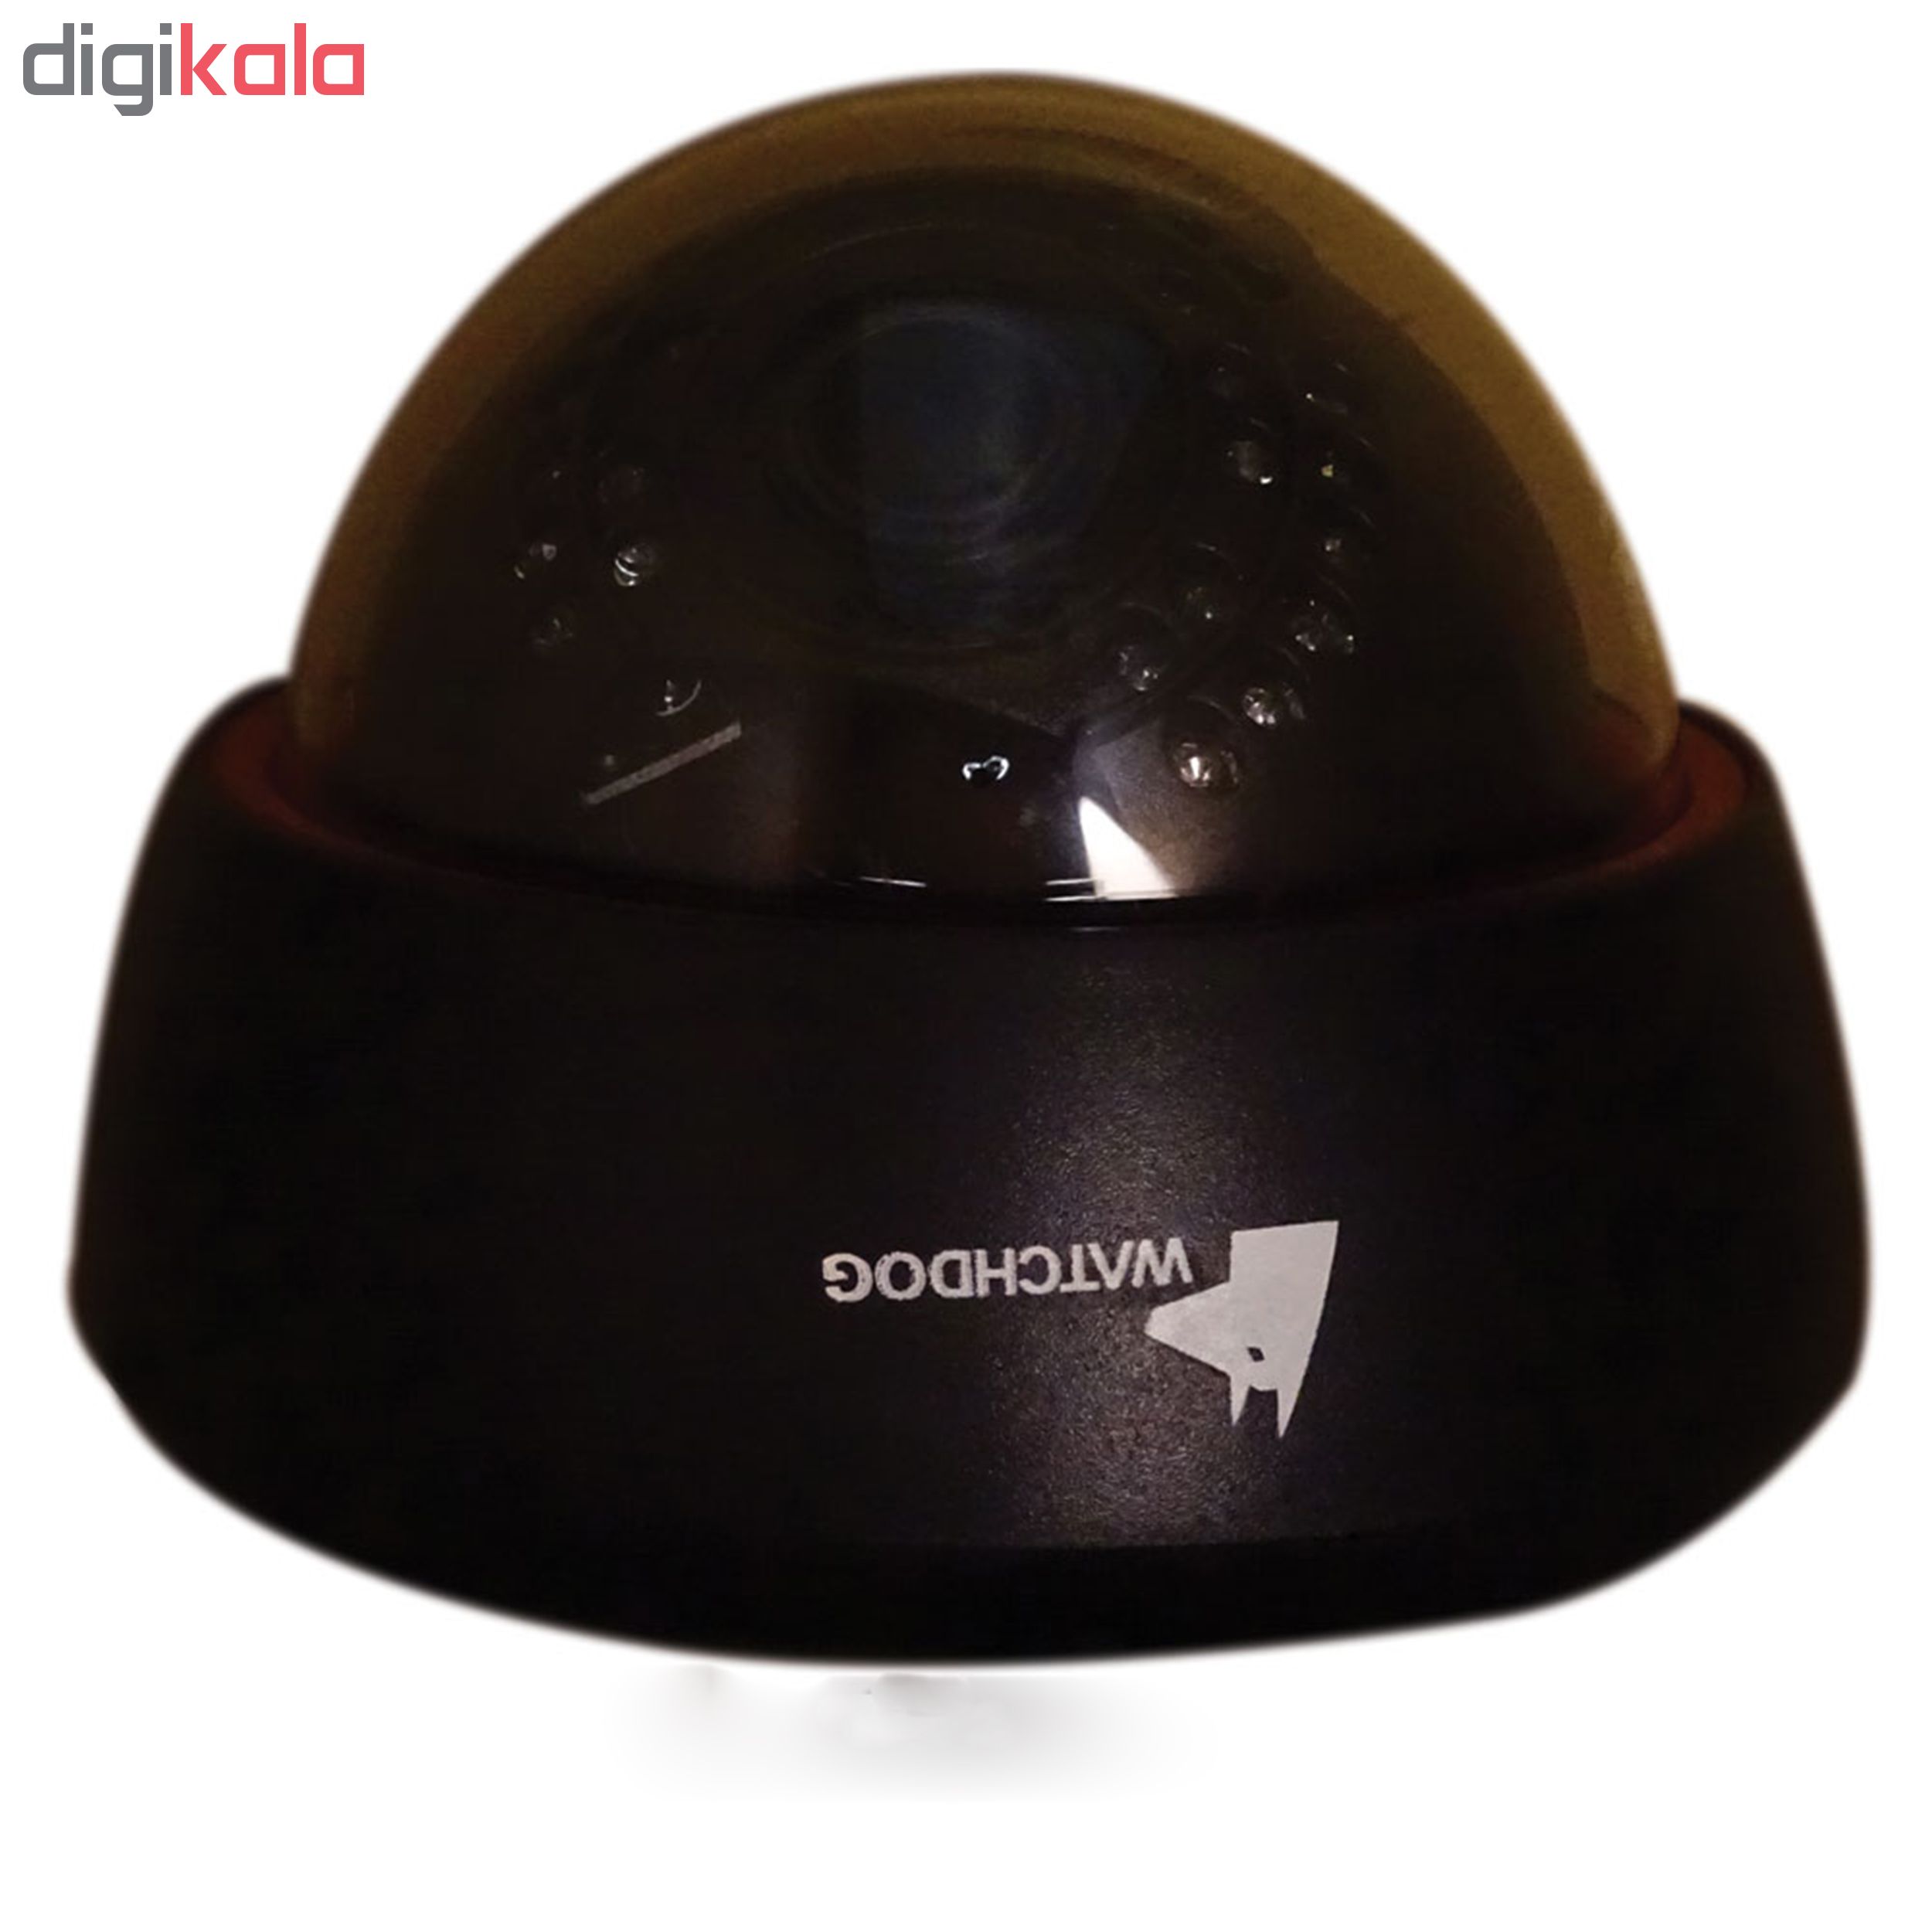 دوربین مدار بسته آنالوگ واچ داگ مدل WD-9050FD مجهز به تکنولوژی تشخیص چهره 